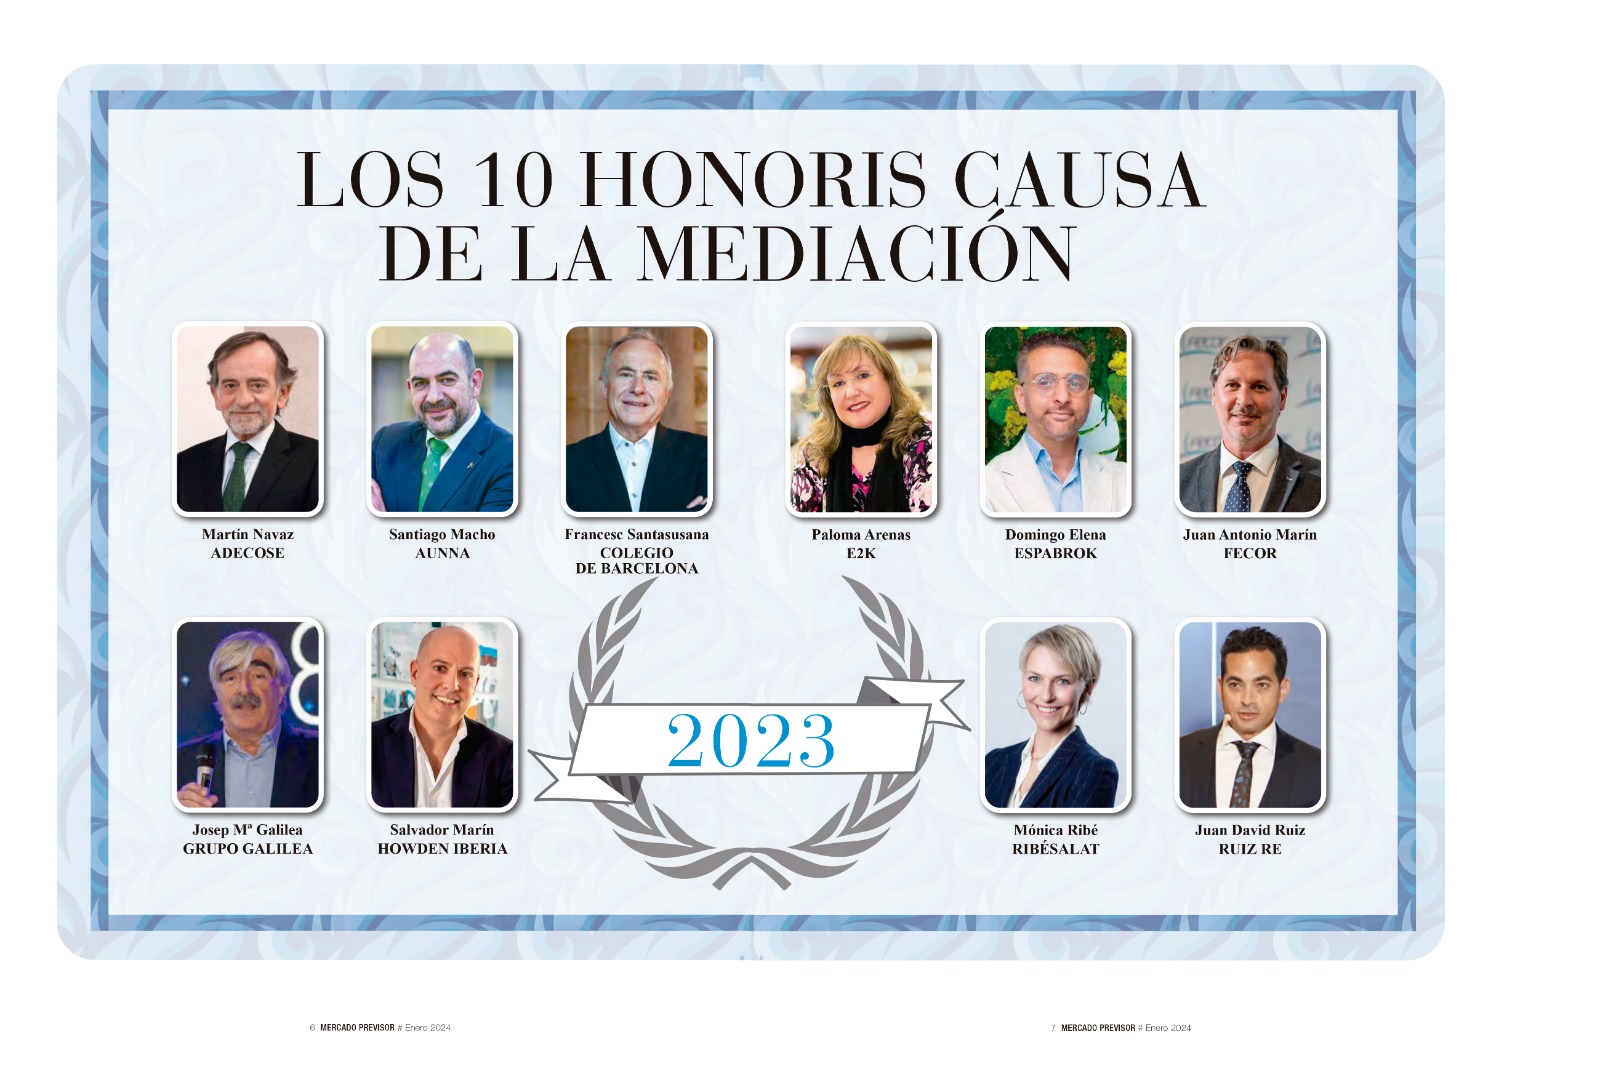 Josep Mª Galilea, uno de los 10 "honoris causa" de la medicación de seguros en 2023 5